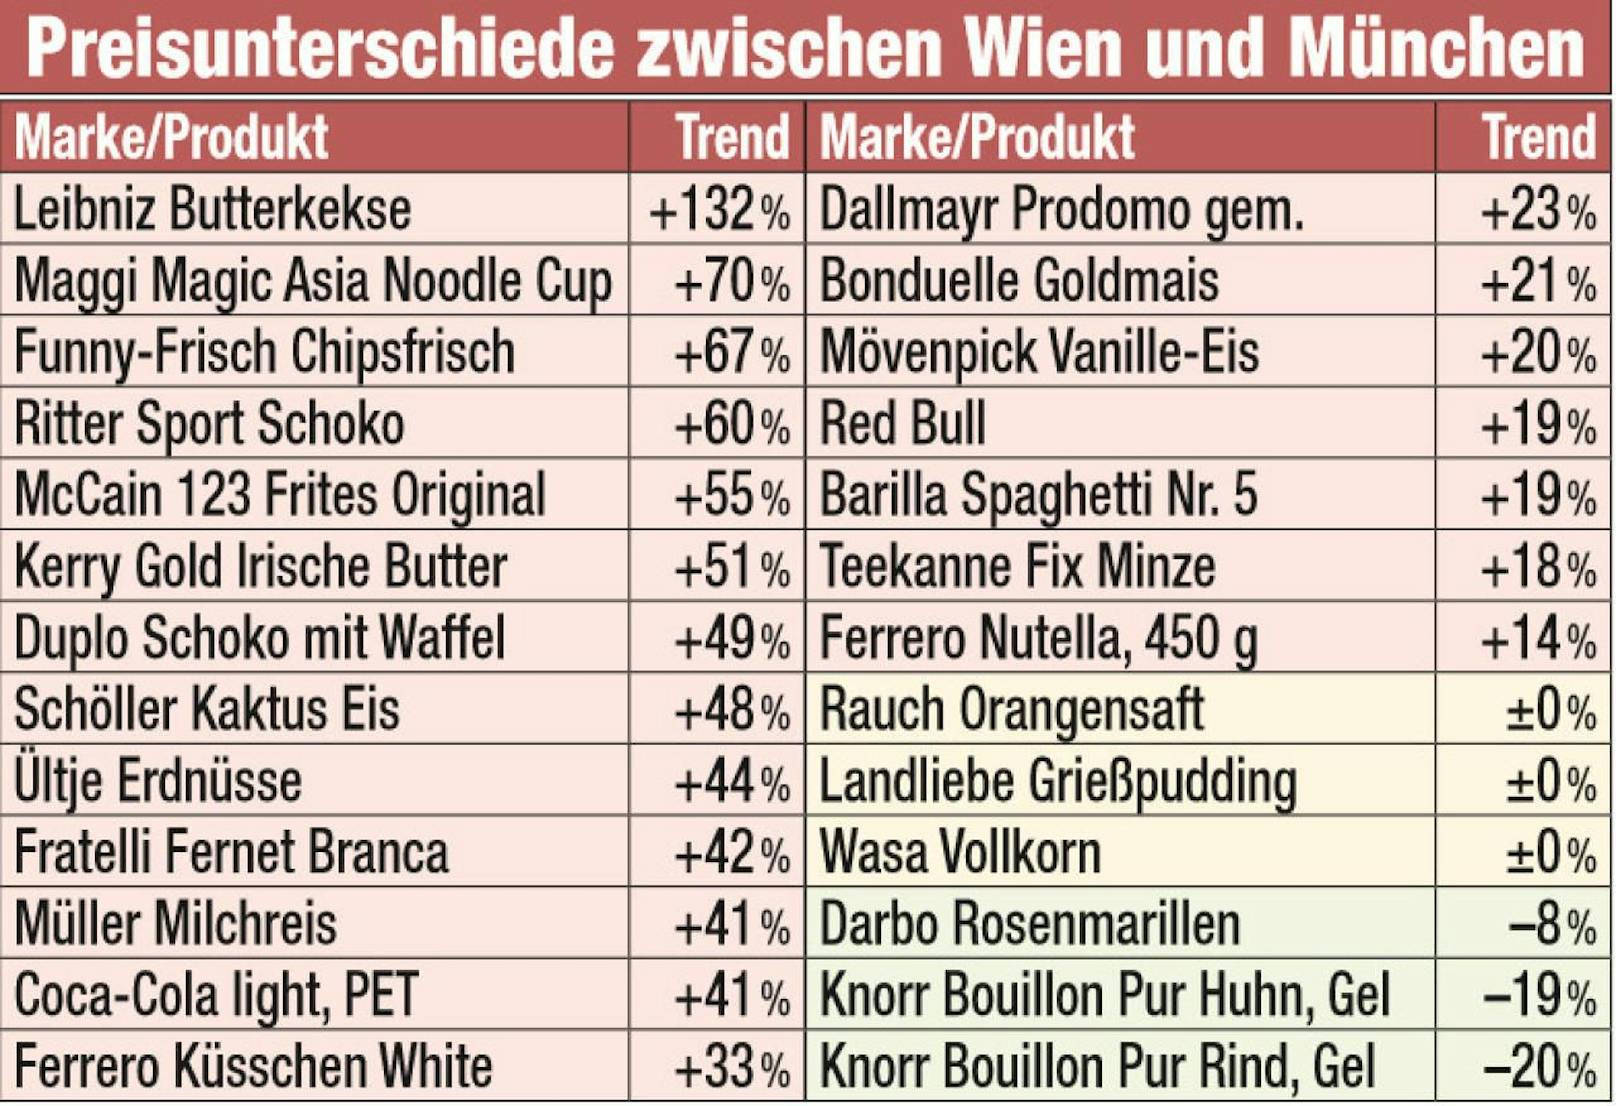 Laut Preischeck der Arbeiterkammer zahlen Wiener durchschnittlich 22 % mehr für Lebensmittel als Münchner. 